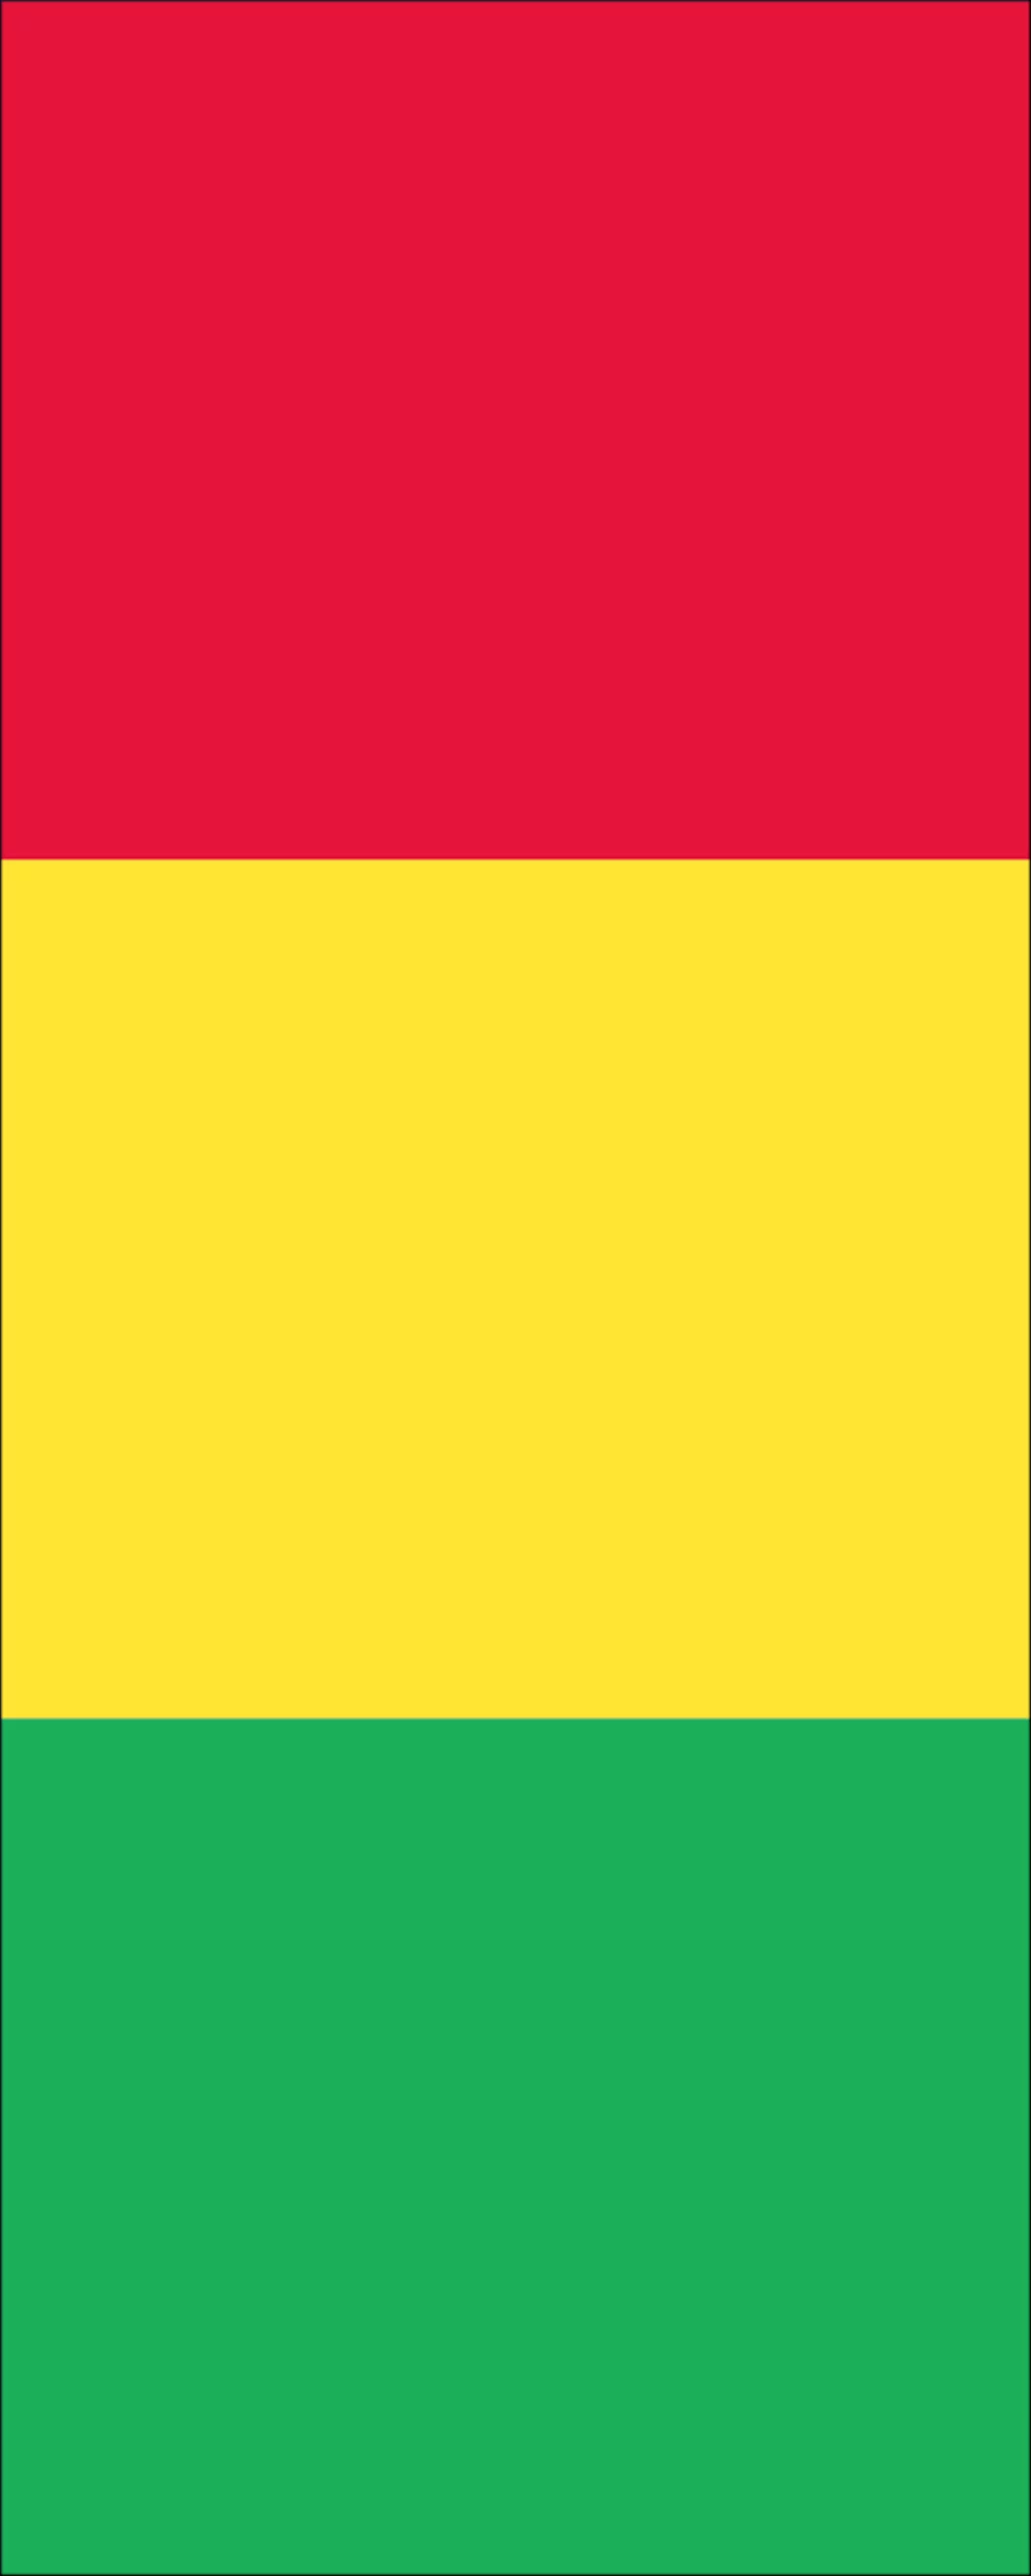 Flagge Guinea